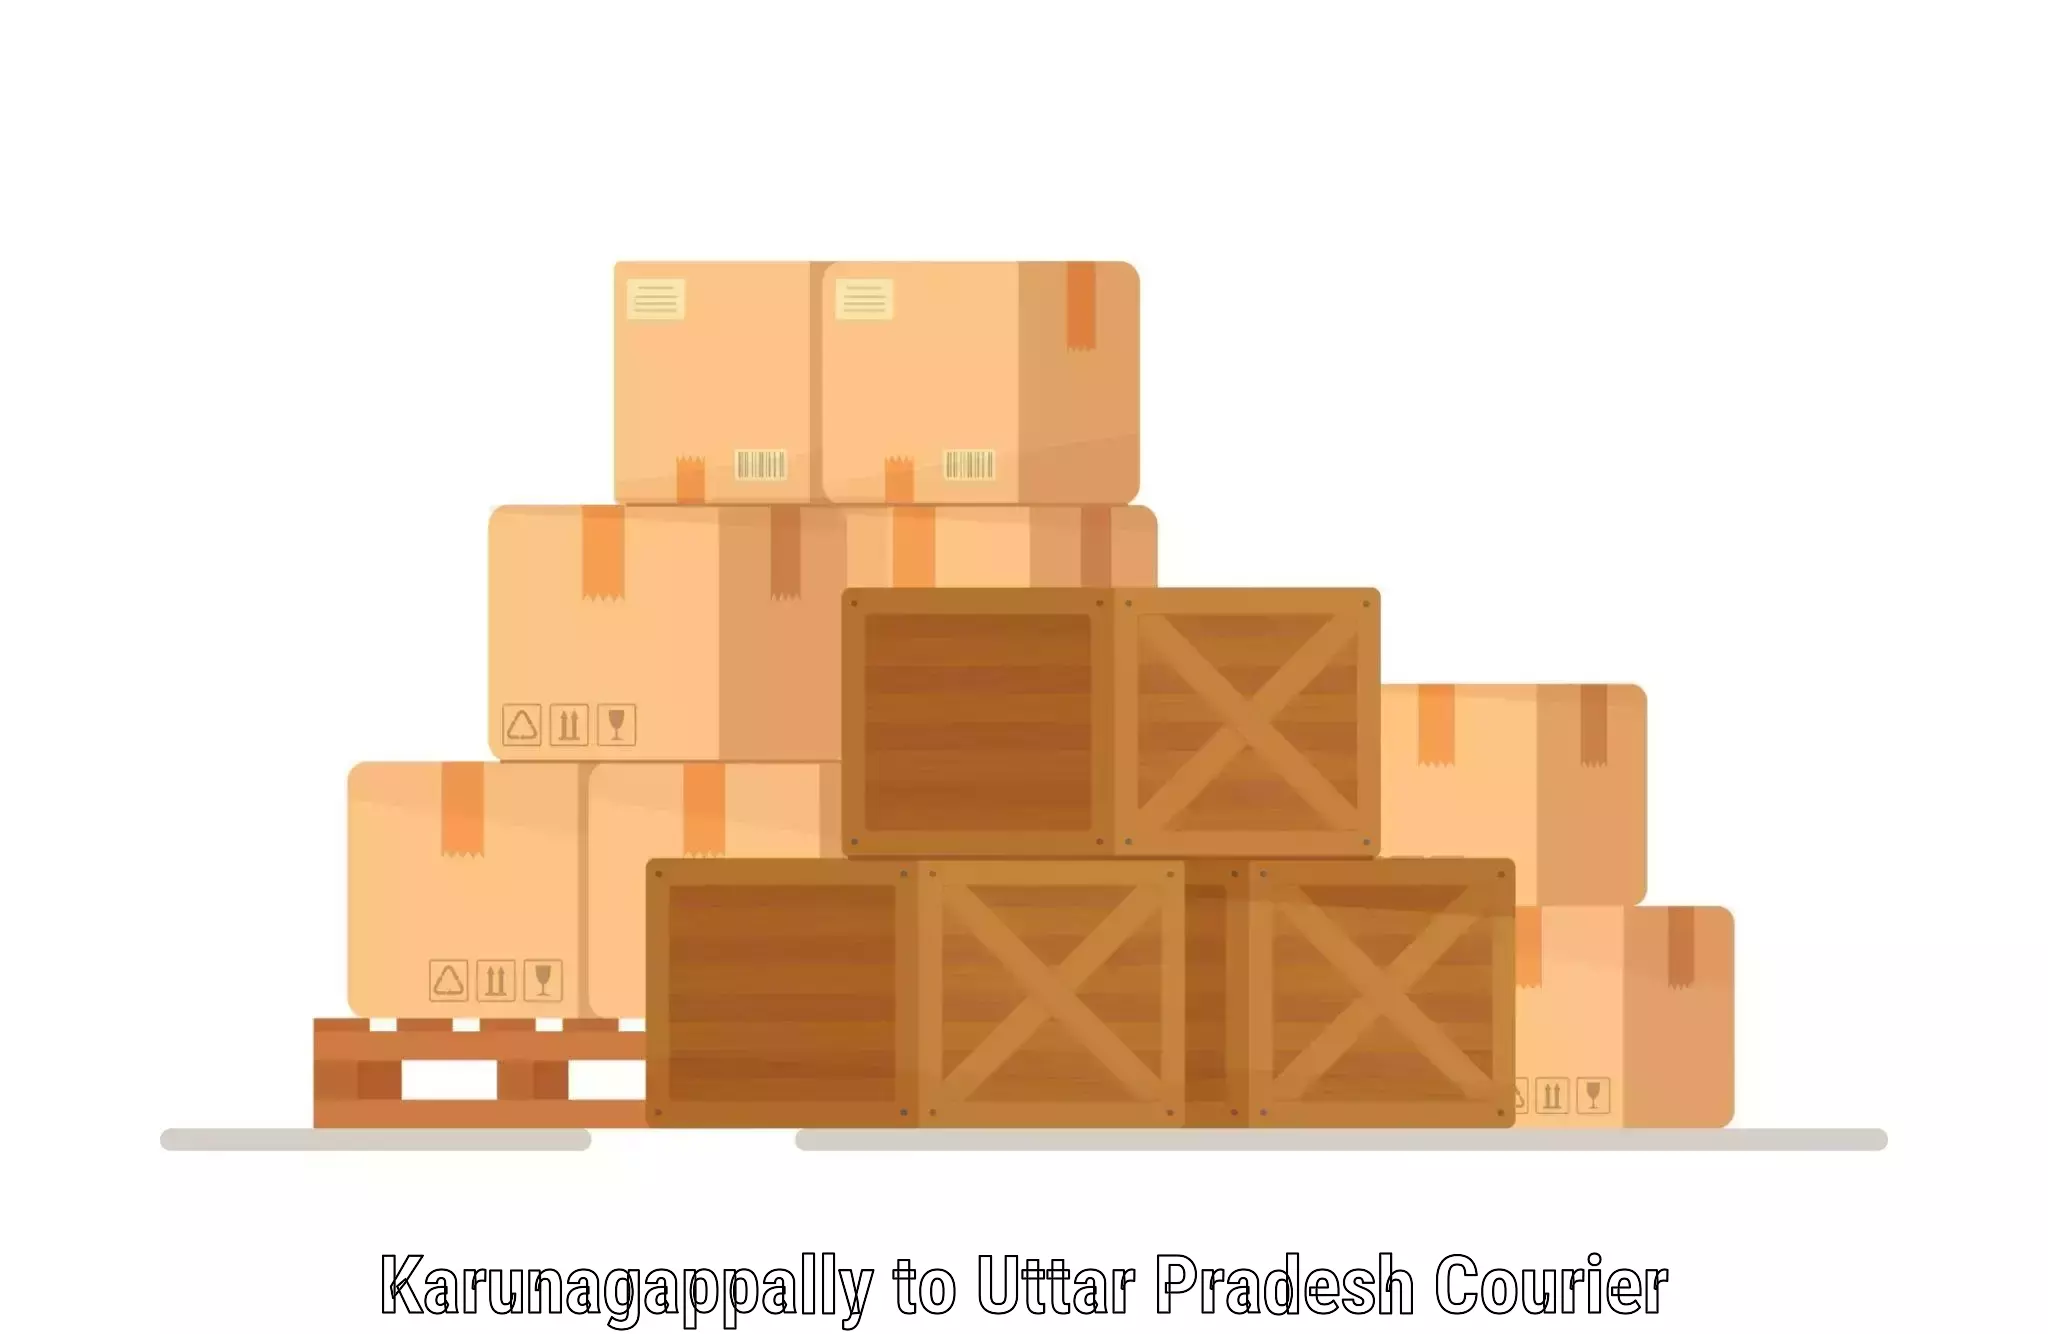 Customer-centric shipping Karunagappally to Jiyanpur